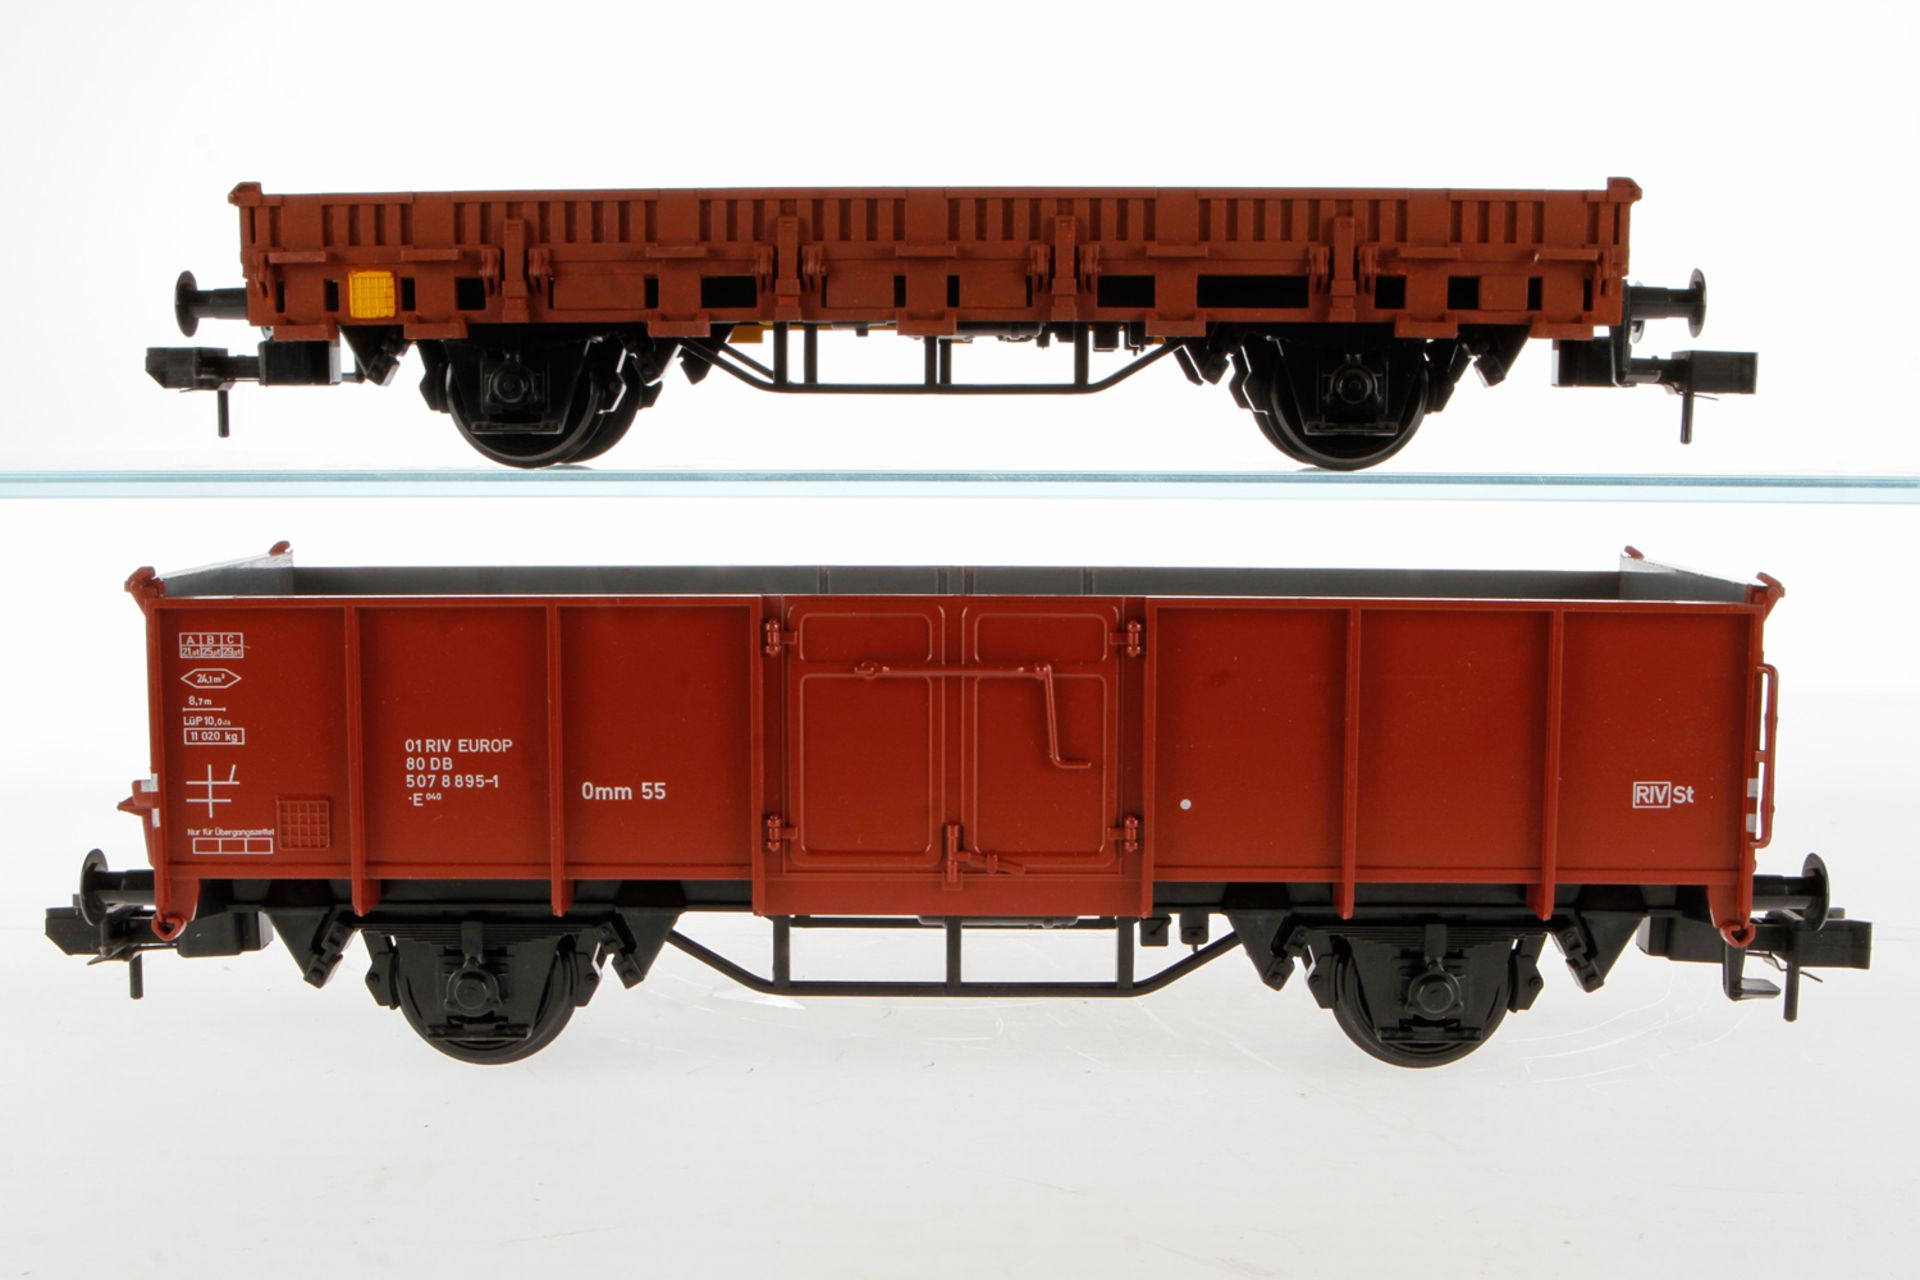 2 Märklin Güterwagen: 5850 und 5853, Spur 1, rotbraun, leichte Alterungsspuren, Länge je 31, je im